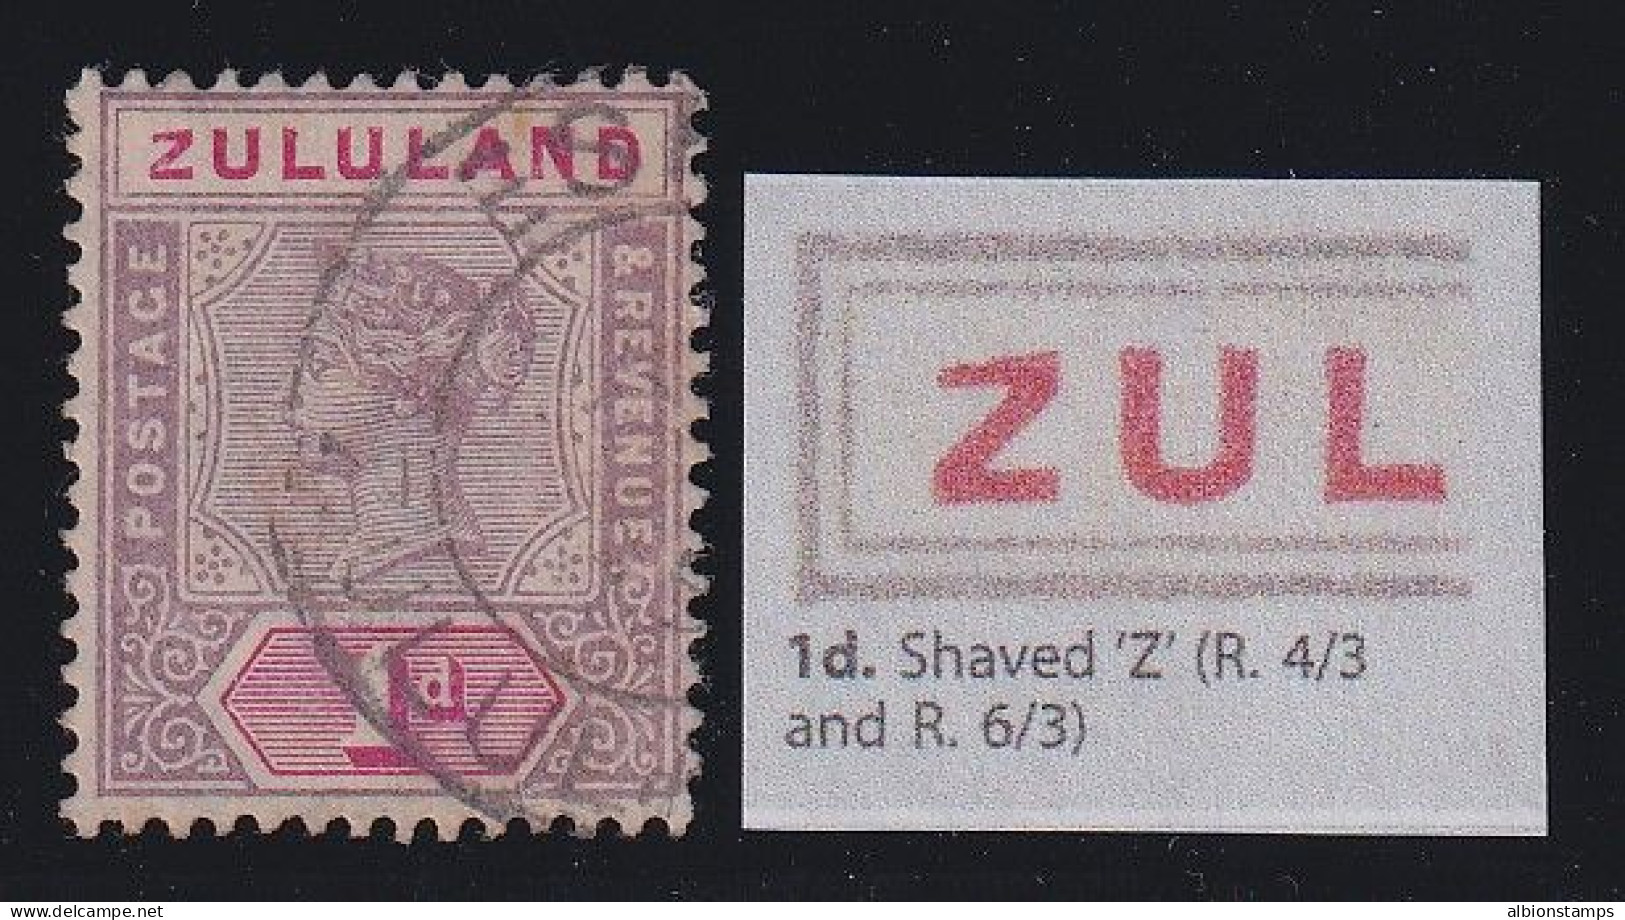 Zululand, SG 21a, Used "Shaved Z" Variety - Zululand (1888-1902)